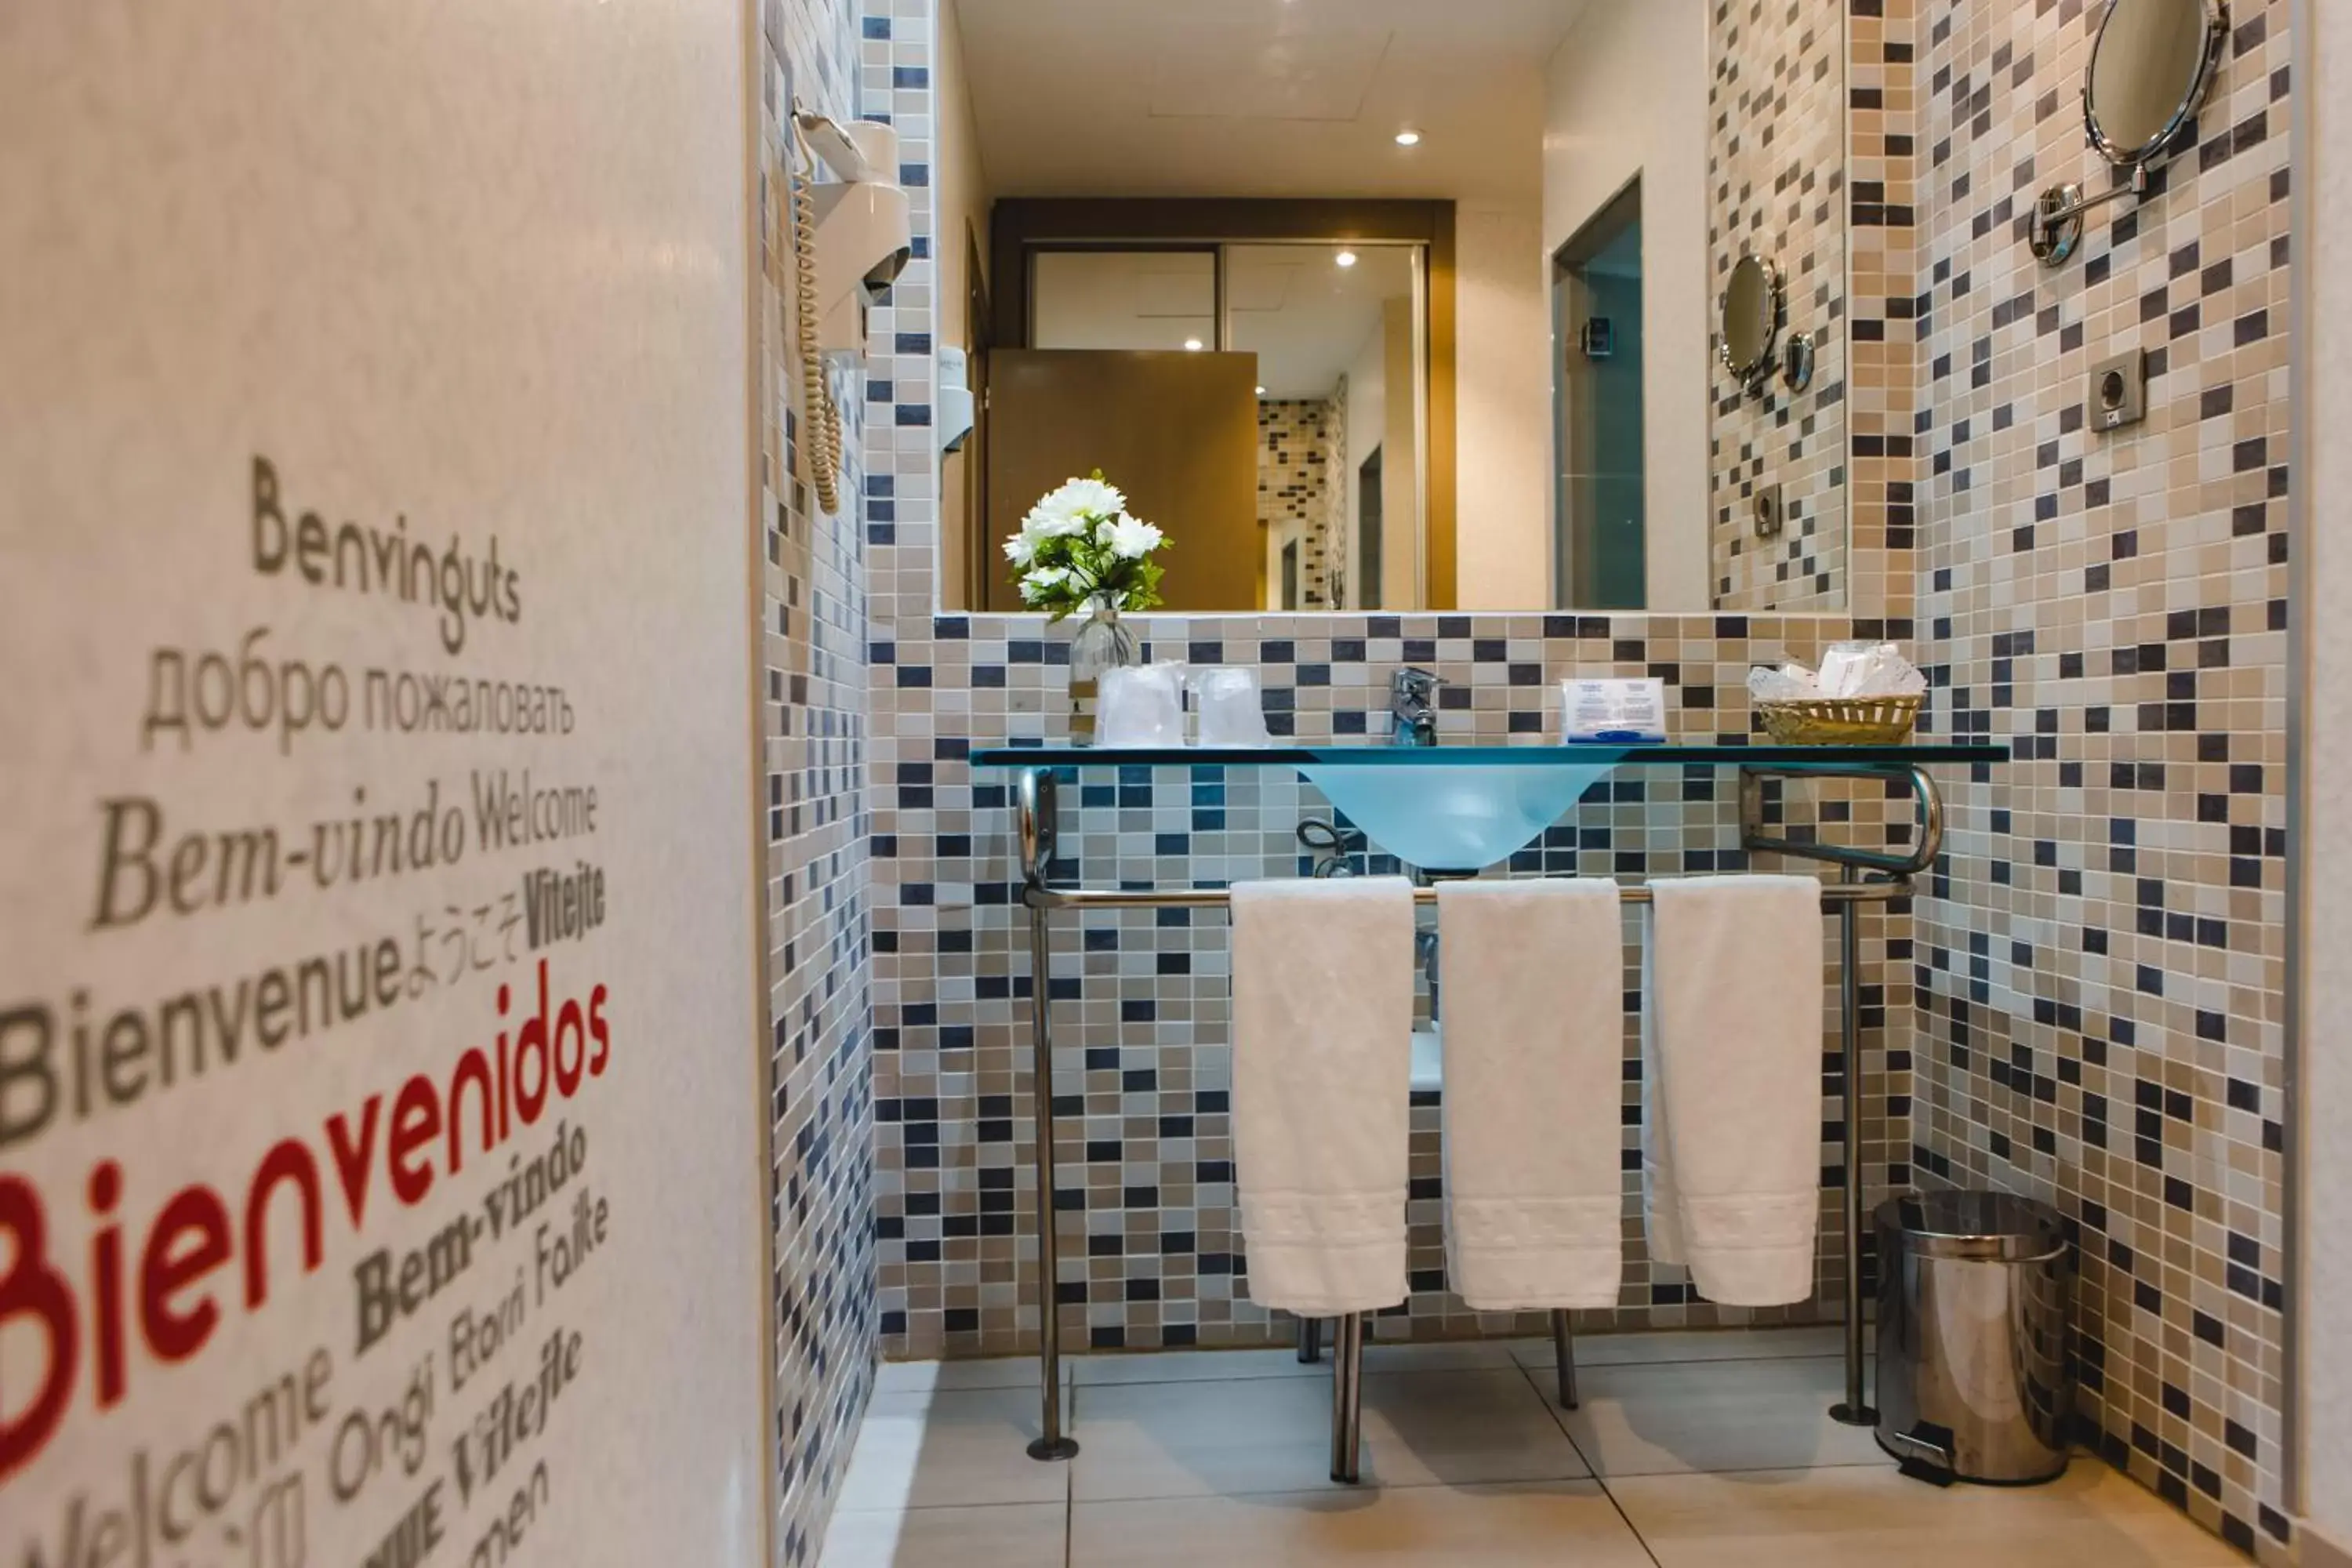 Bathroom in Hotel Mas Camarena